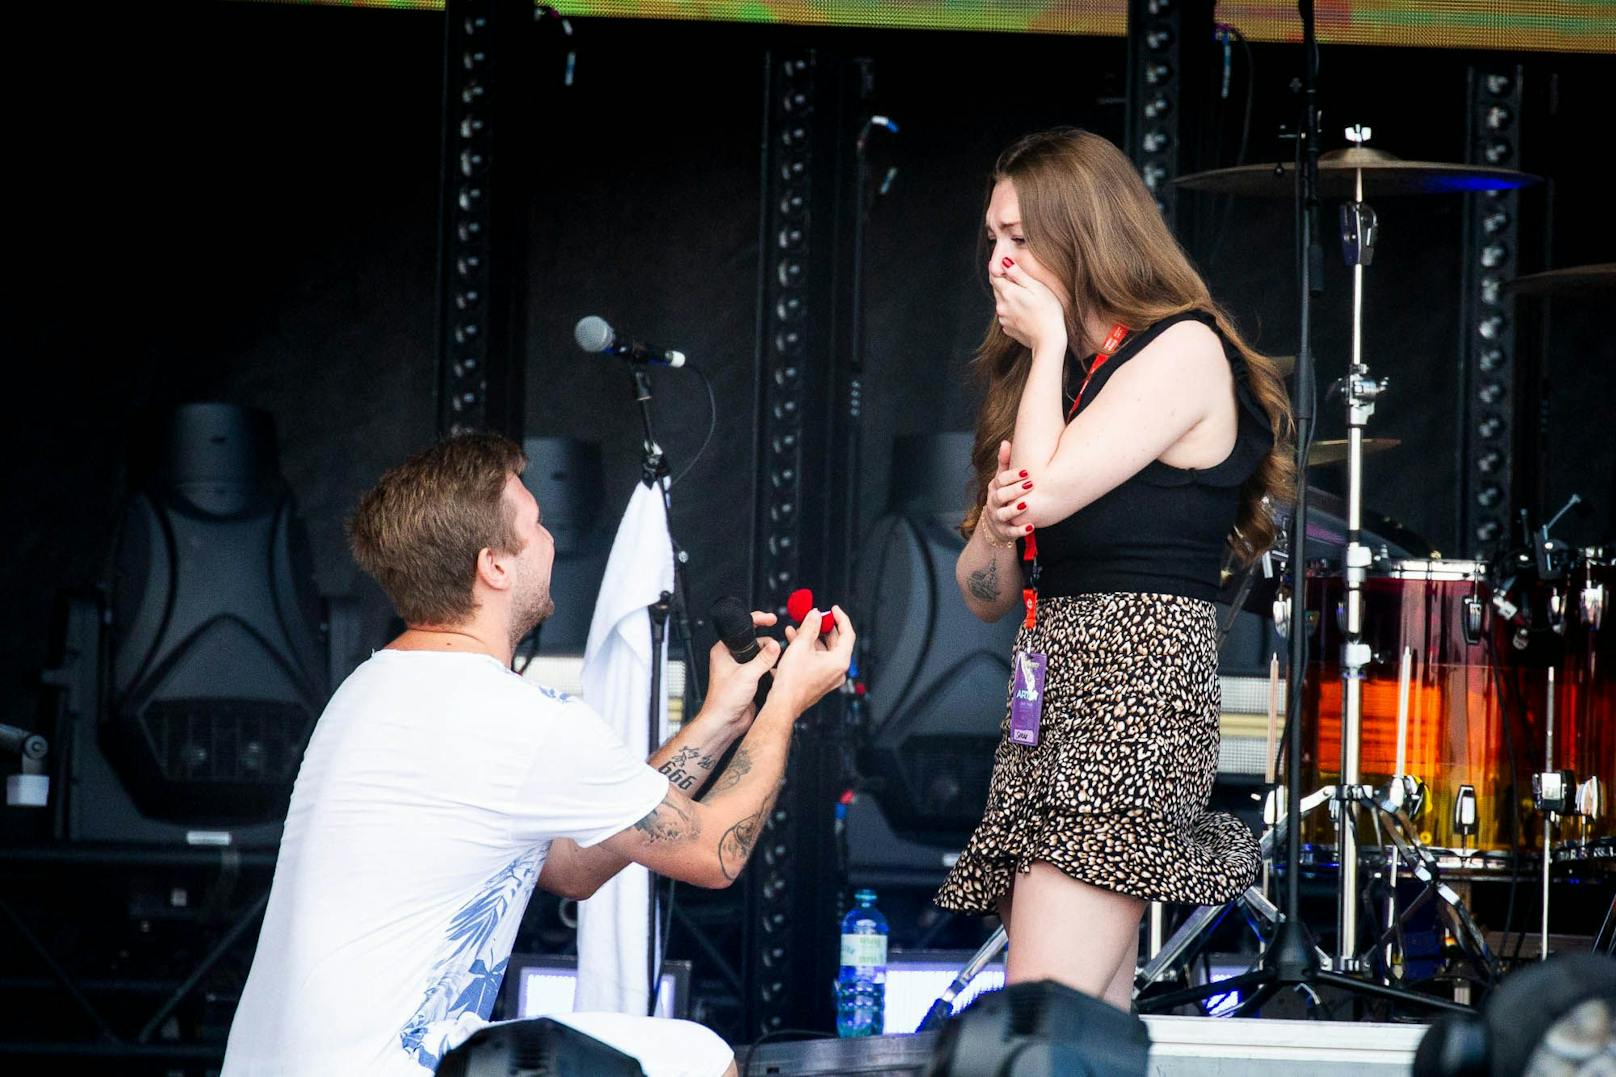 Patrick machte seiner Freundin auf der Bühne einen Heiratsantrag.